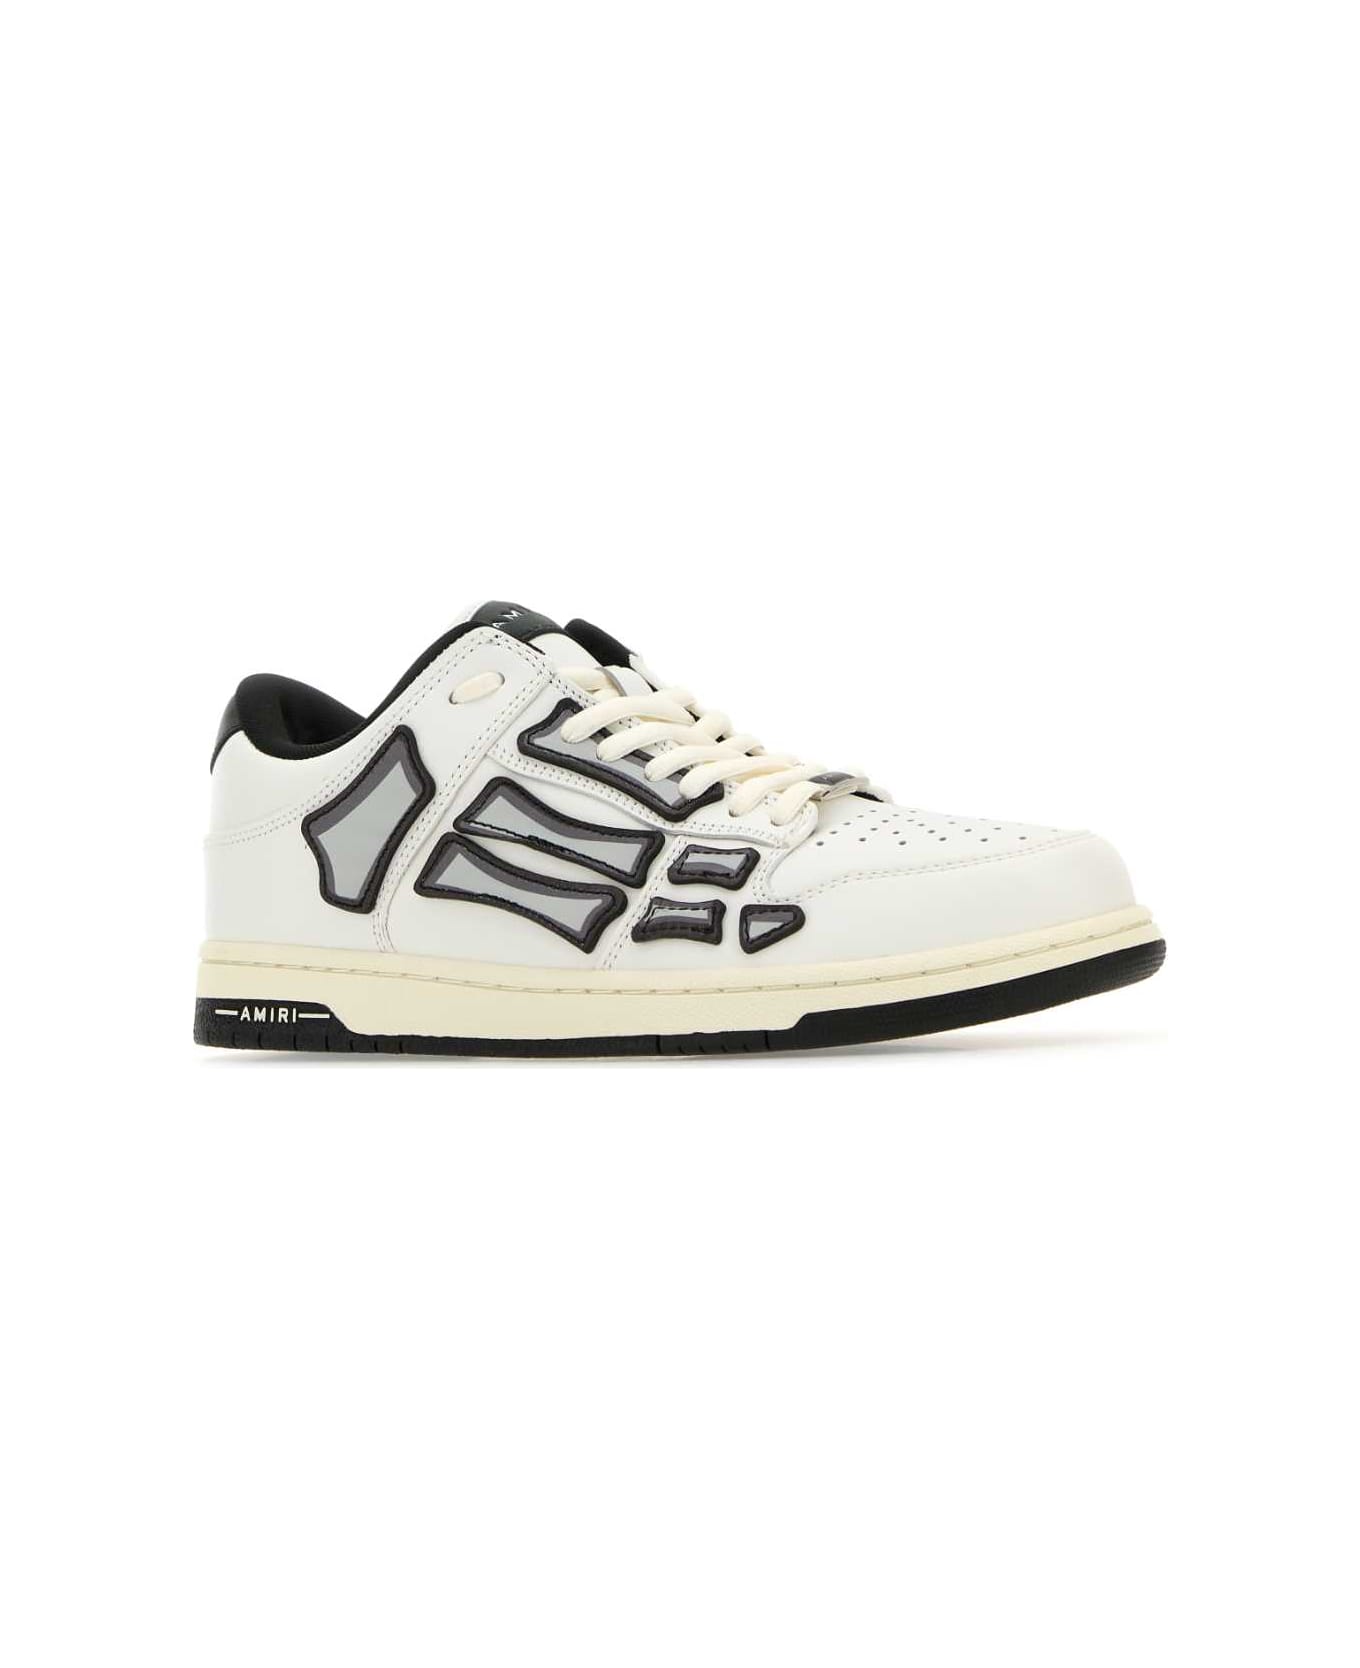 AMIRI White Leather Skel Sneakers - WHITEBLACK